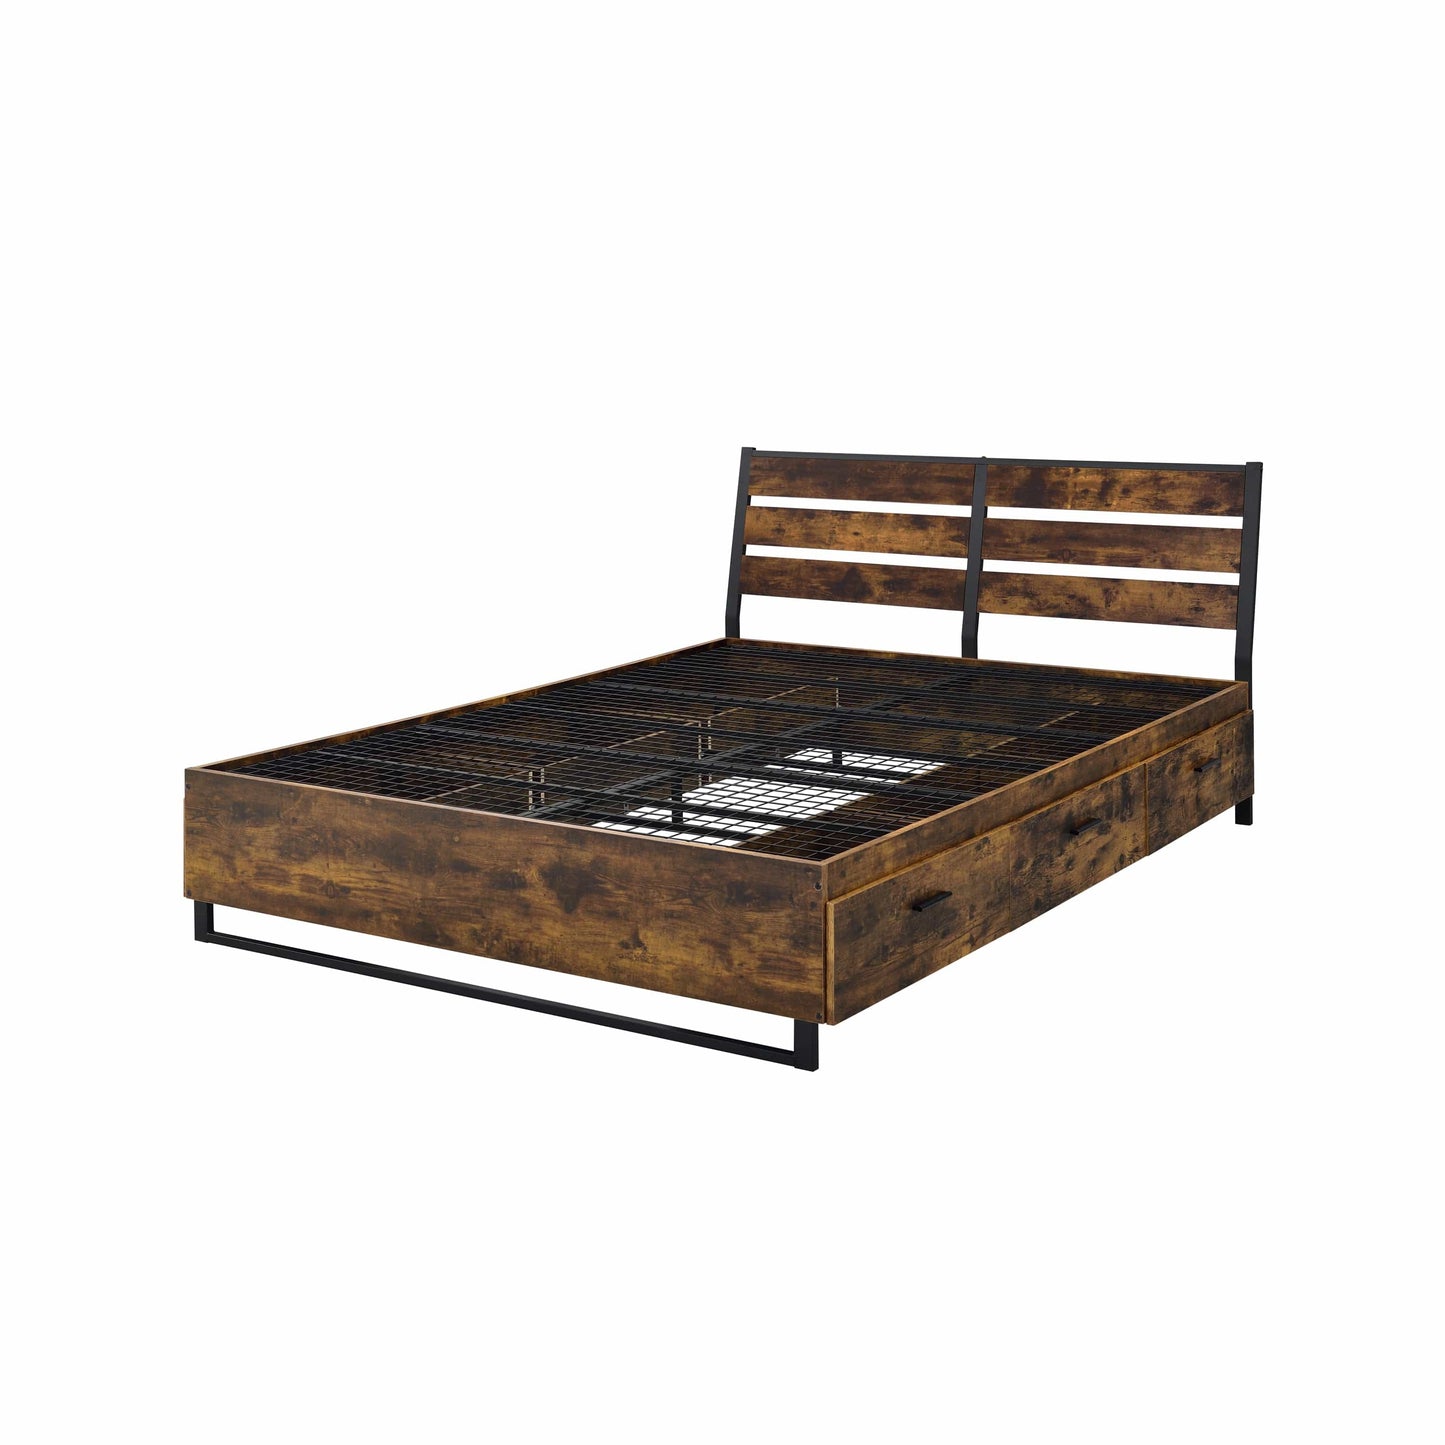 ACME Juvanth Queen Bed W/Storage in Rustic Oak & Black Finish 24260Q